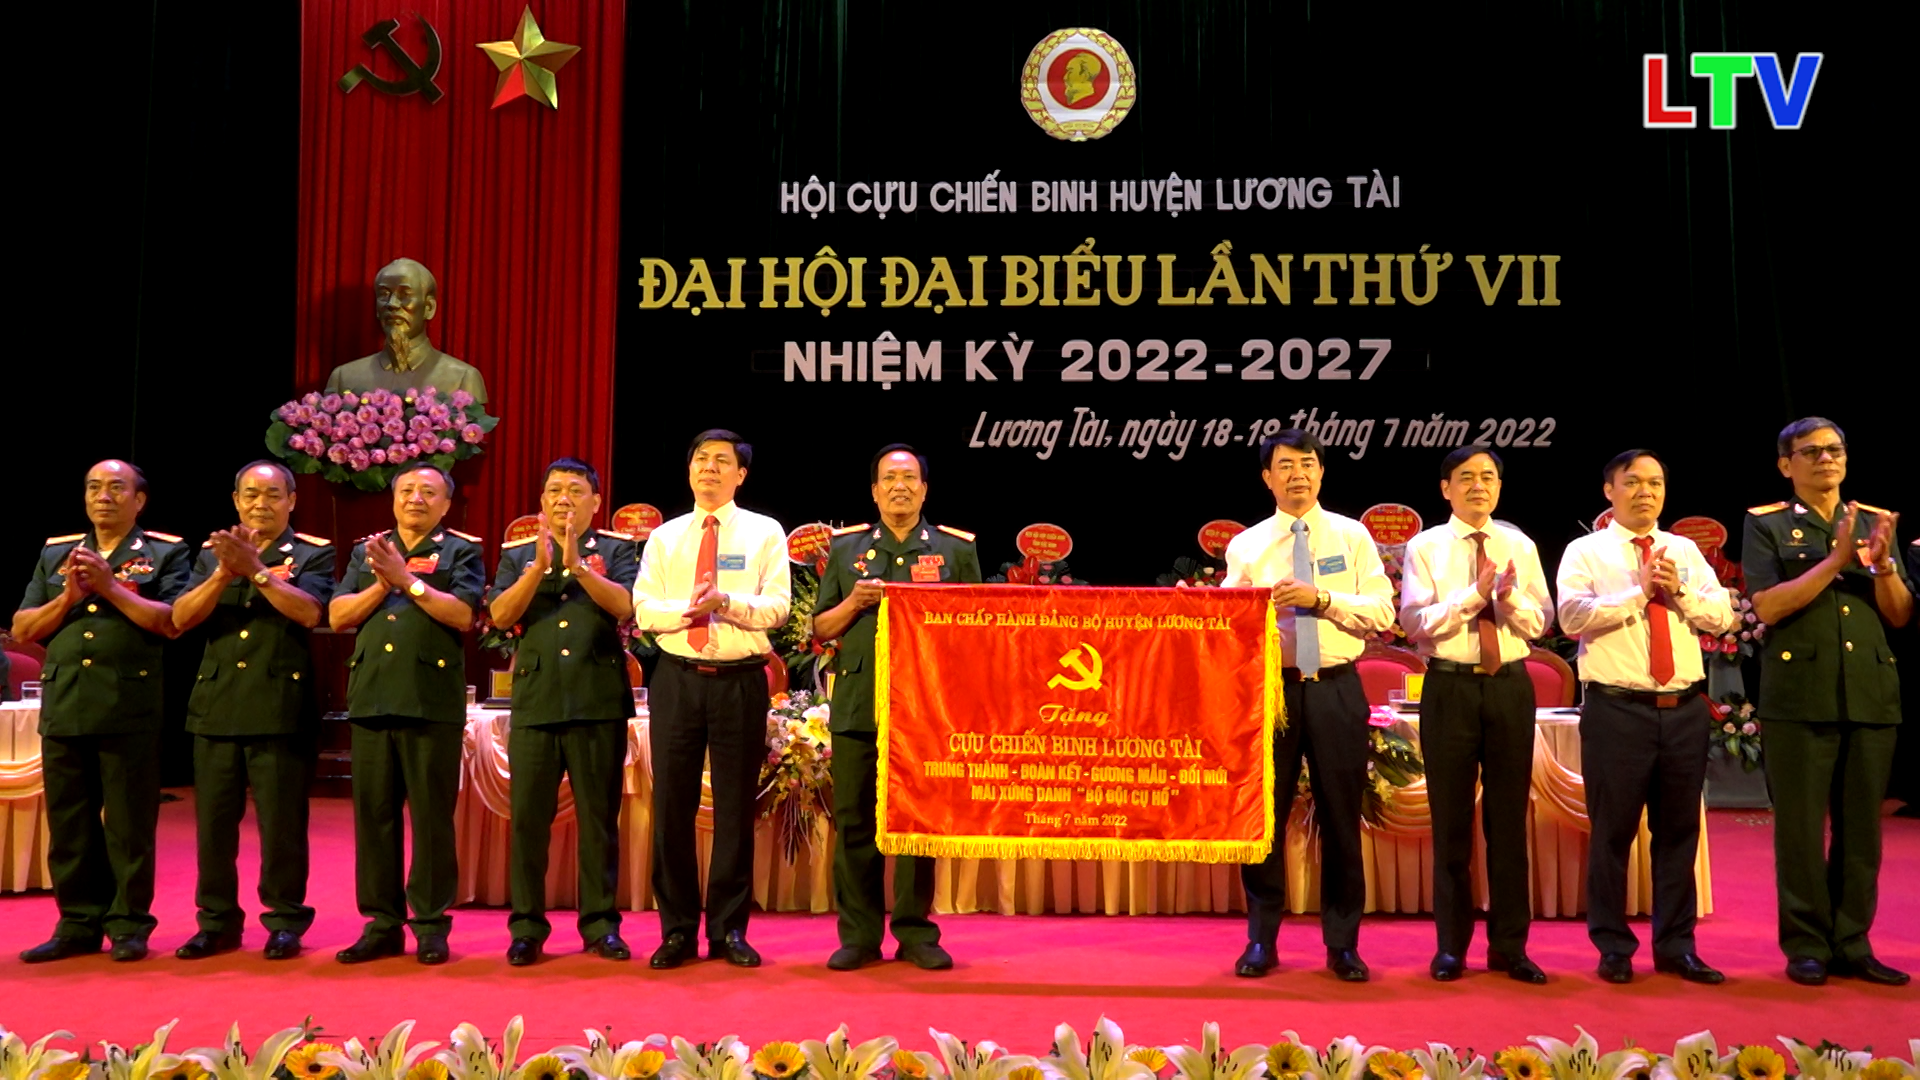 Đại hội Đại biểu hội Cựu chiến binh huyện Lương Tài lần thứ 7, nhiệm kỳ 2022-2027.mp4